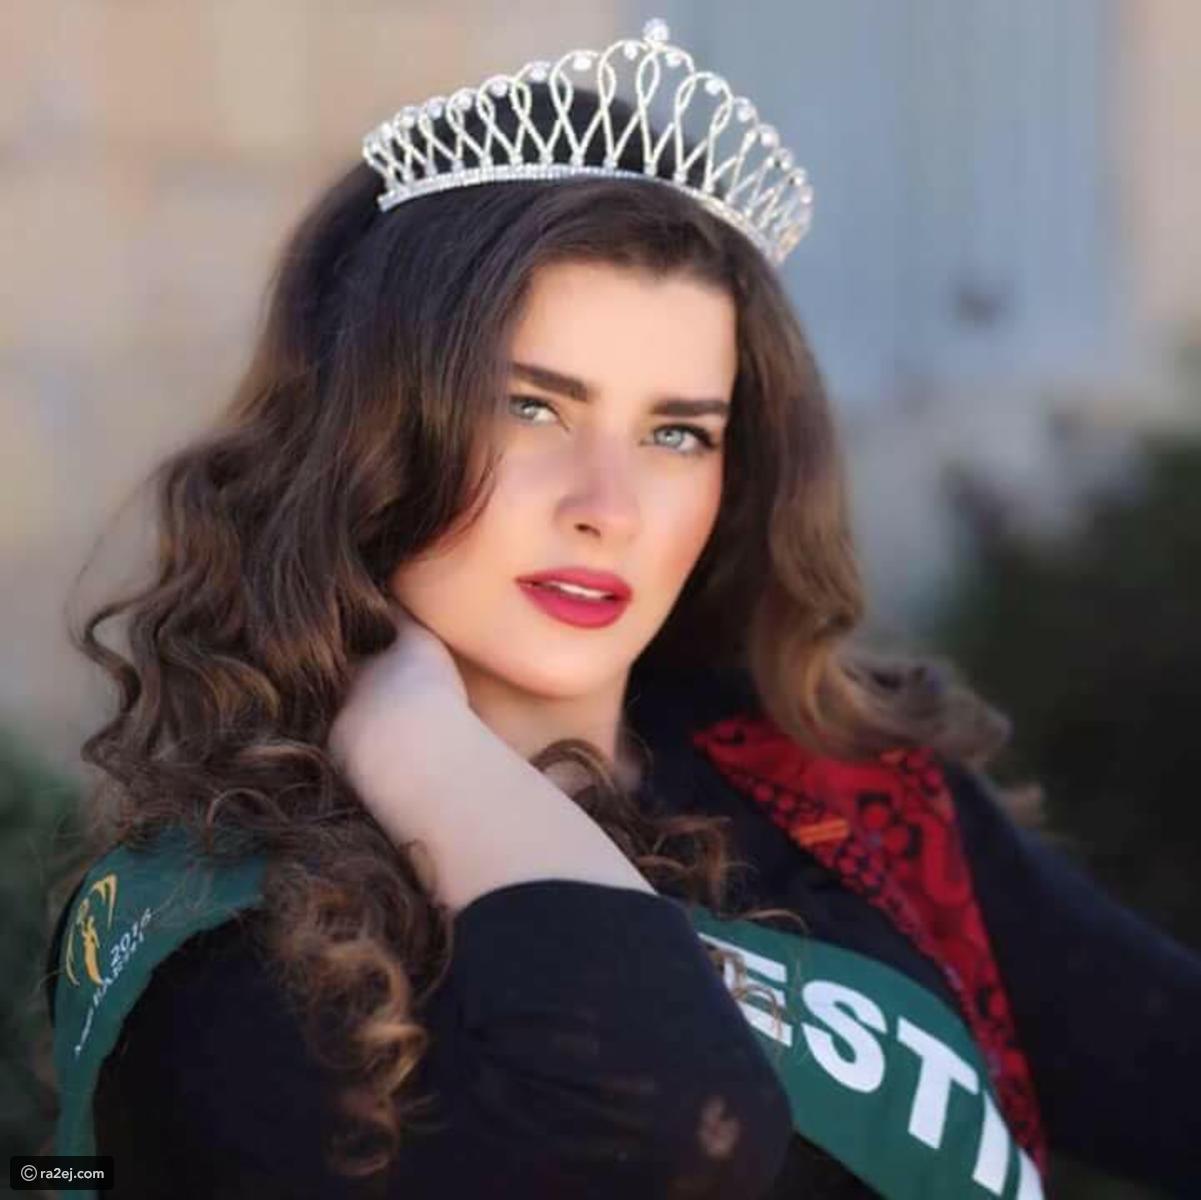 161 4 صور اجمل بنات في العالم العربي كله - ملكات جمال الكون سوسن فاروق